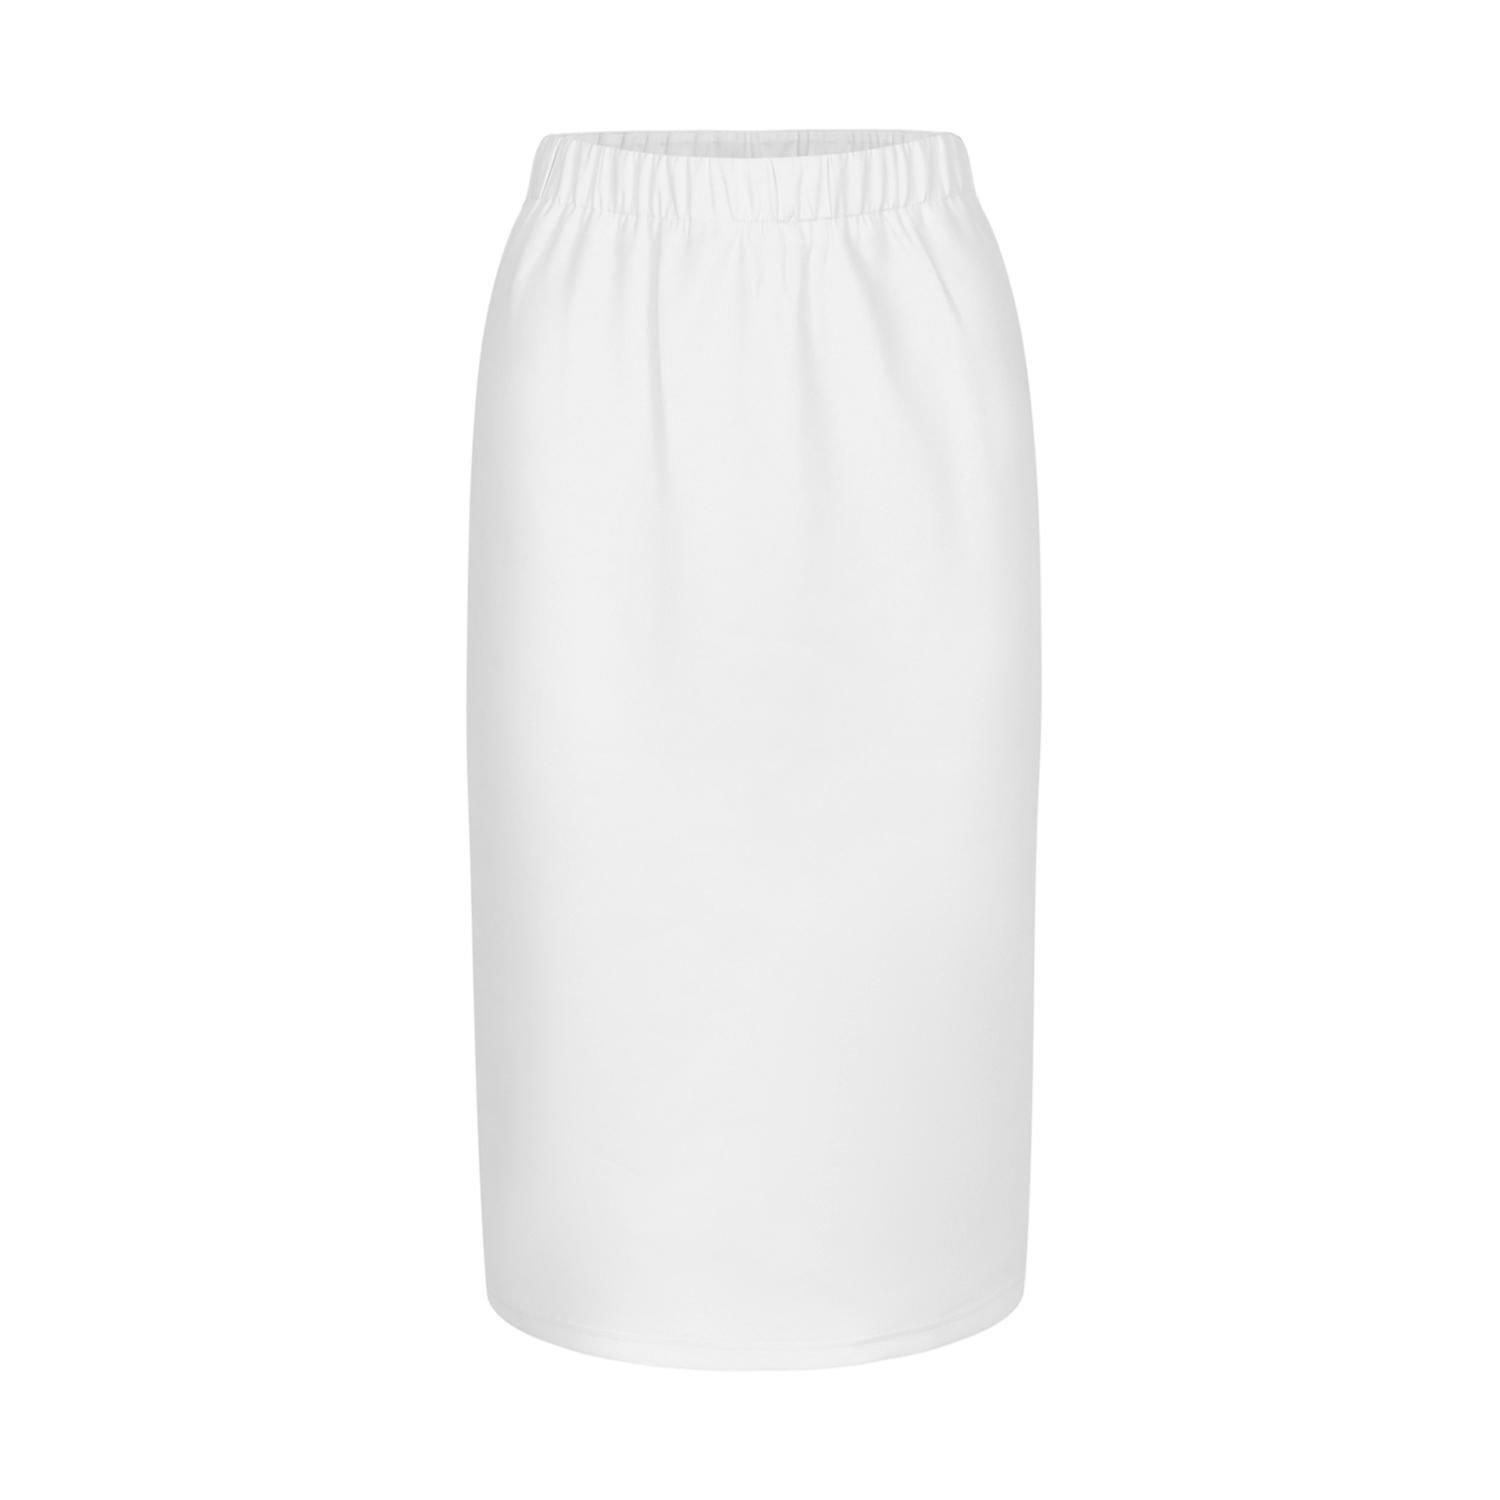 All-over print AOP women's pencil skirt - Print On Demand|HugePOD-1